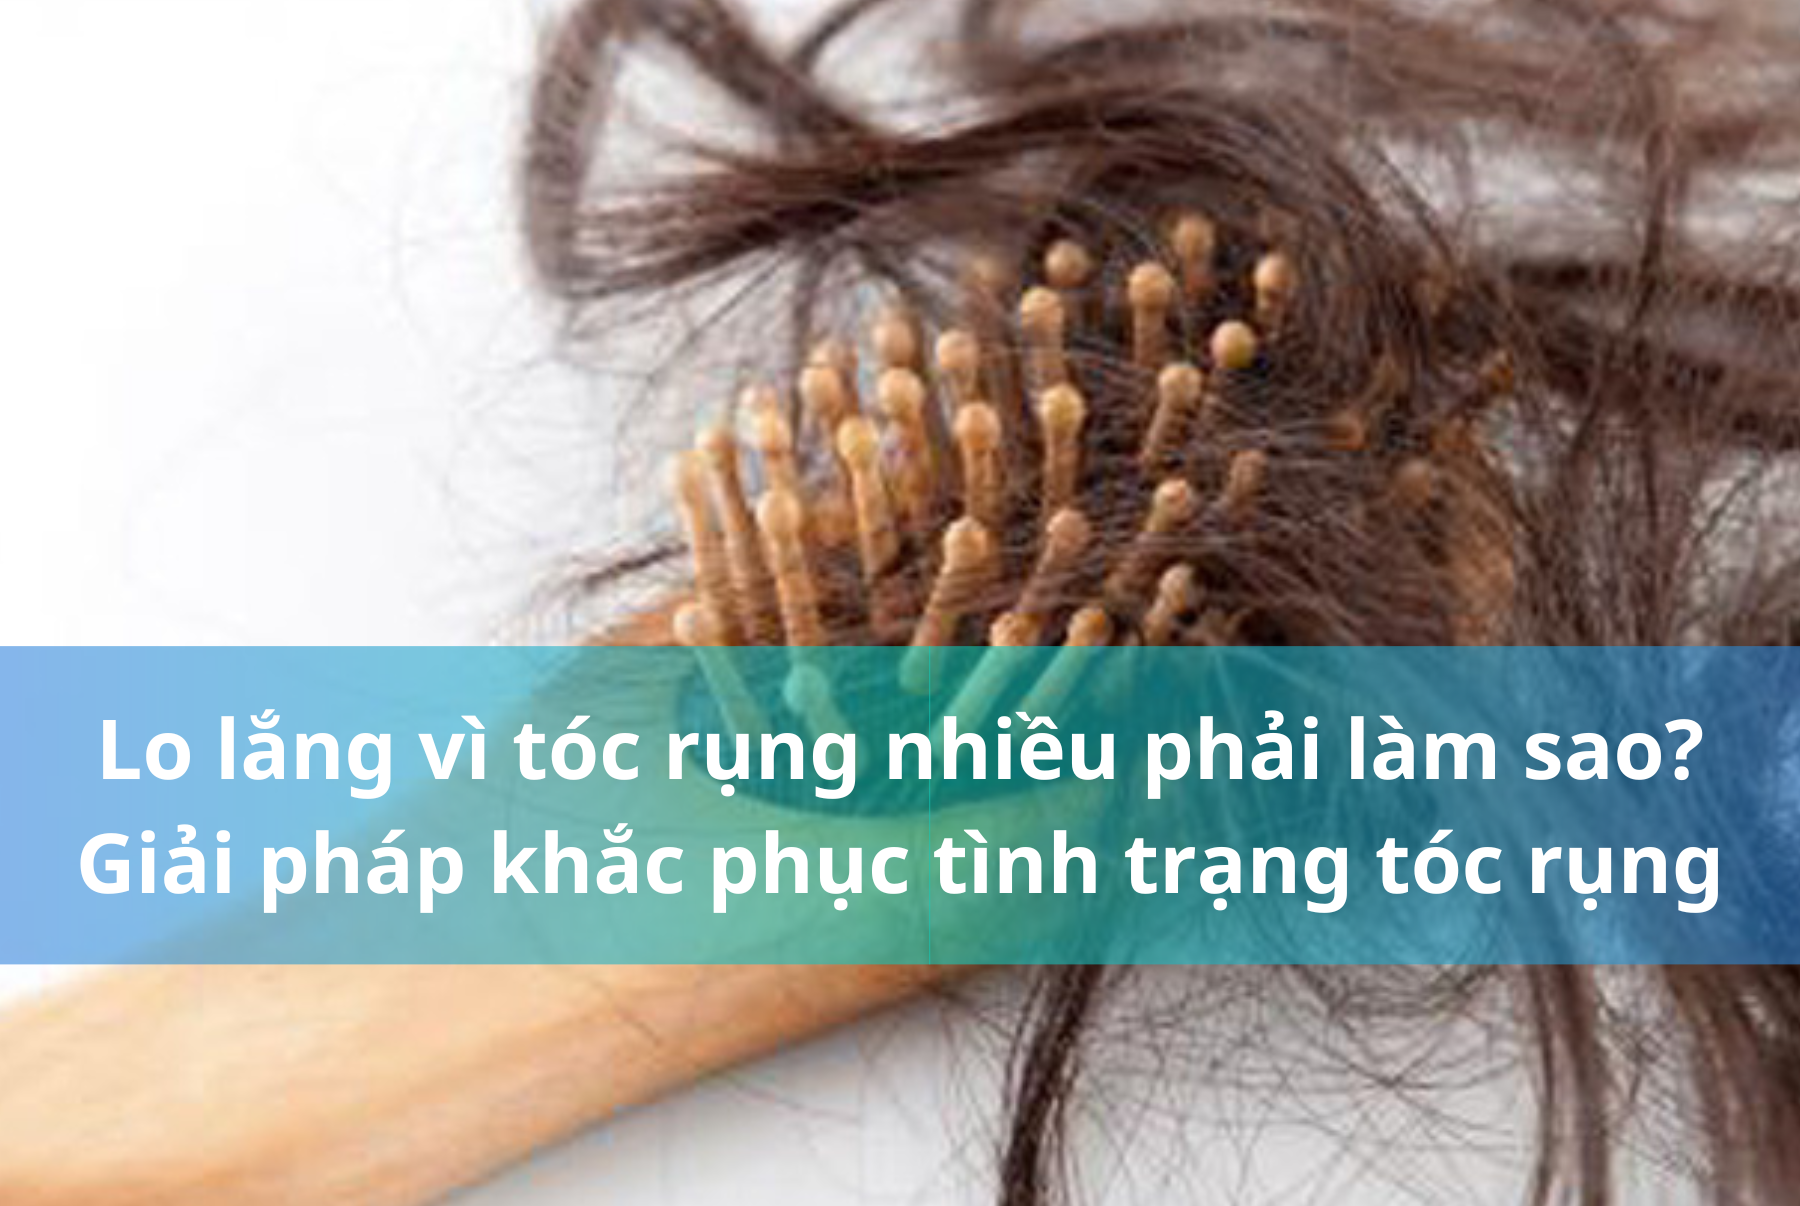 Lo lắng vì tóc rụng nhiều phải làm sao? Và những giải pháp khắc phục hiệu quả tình trạng tóc rụng